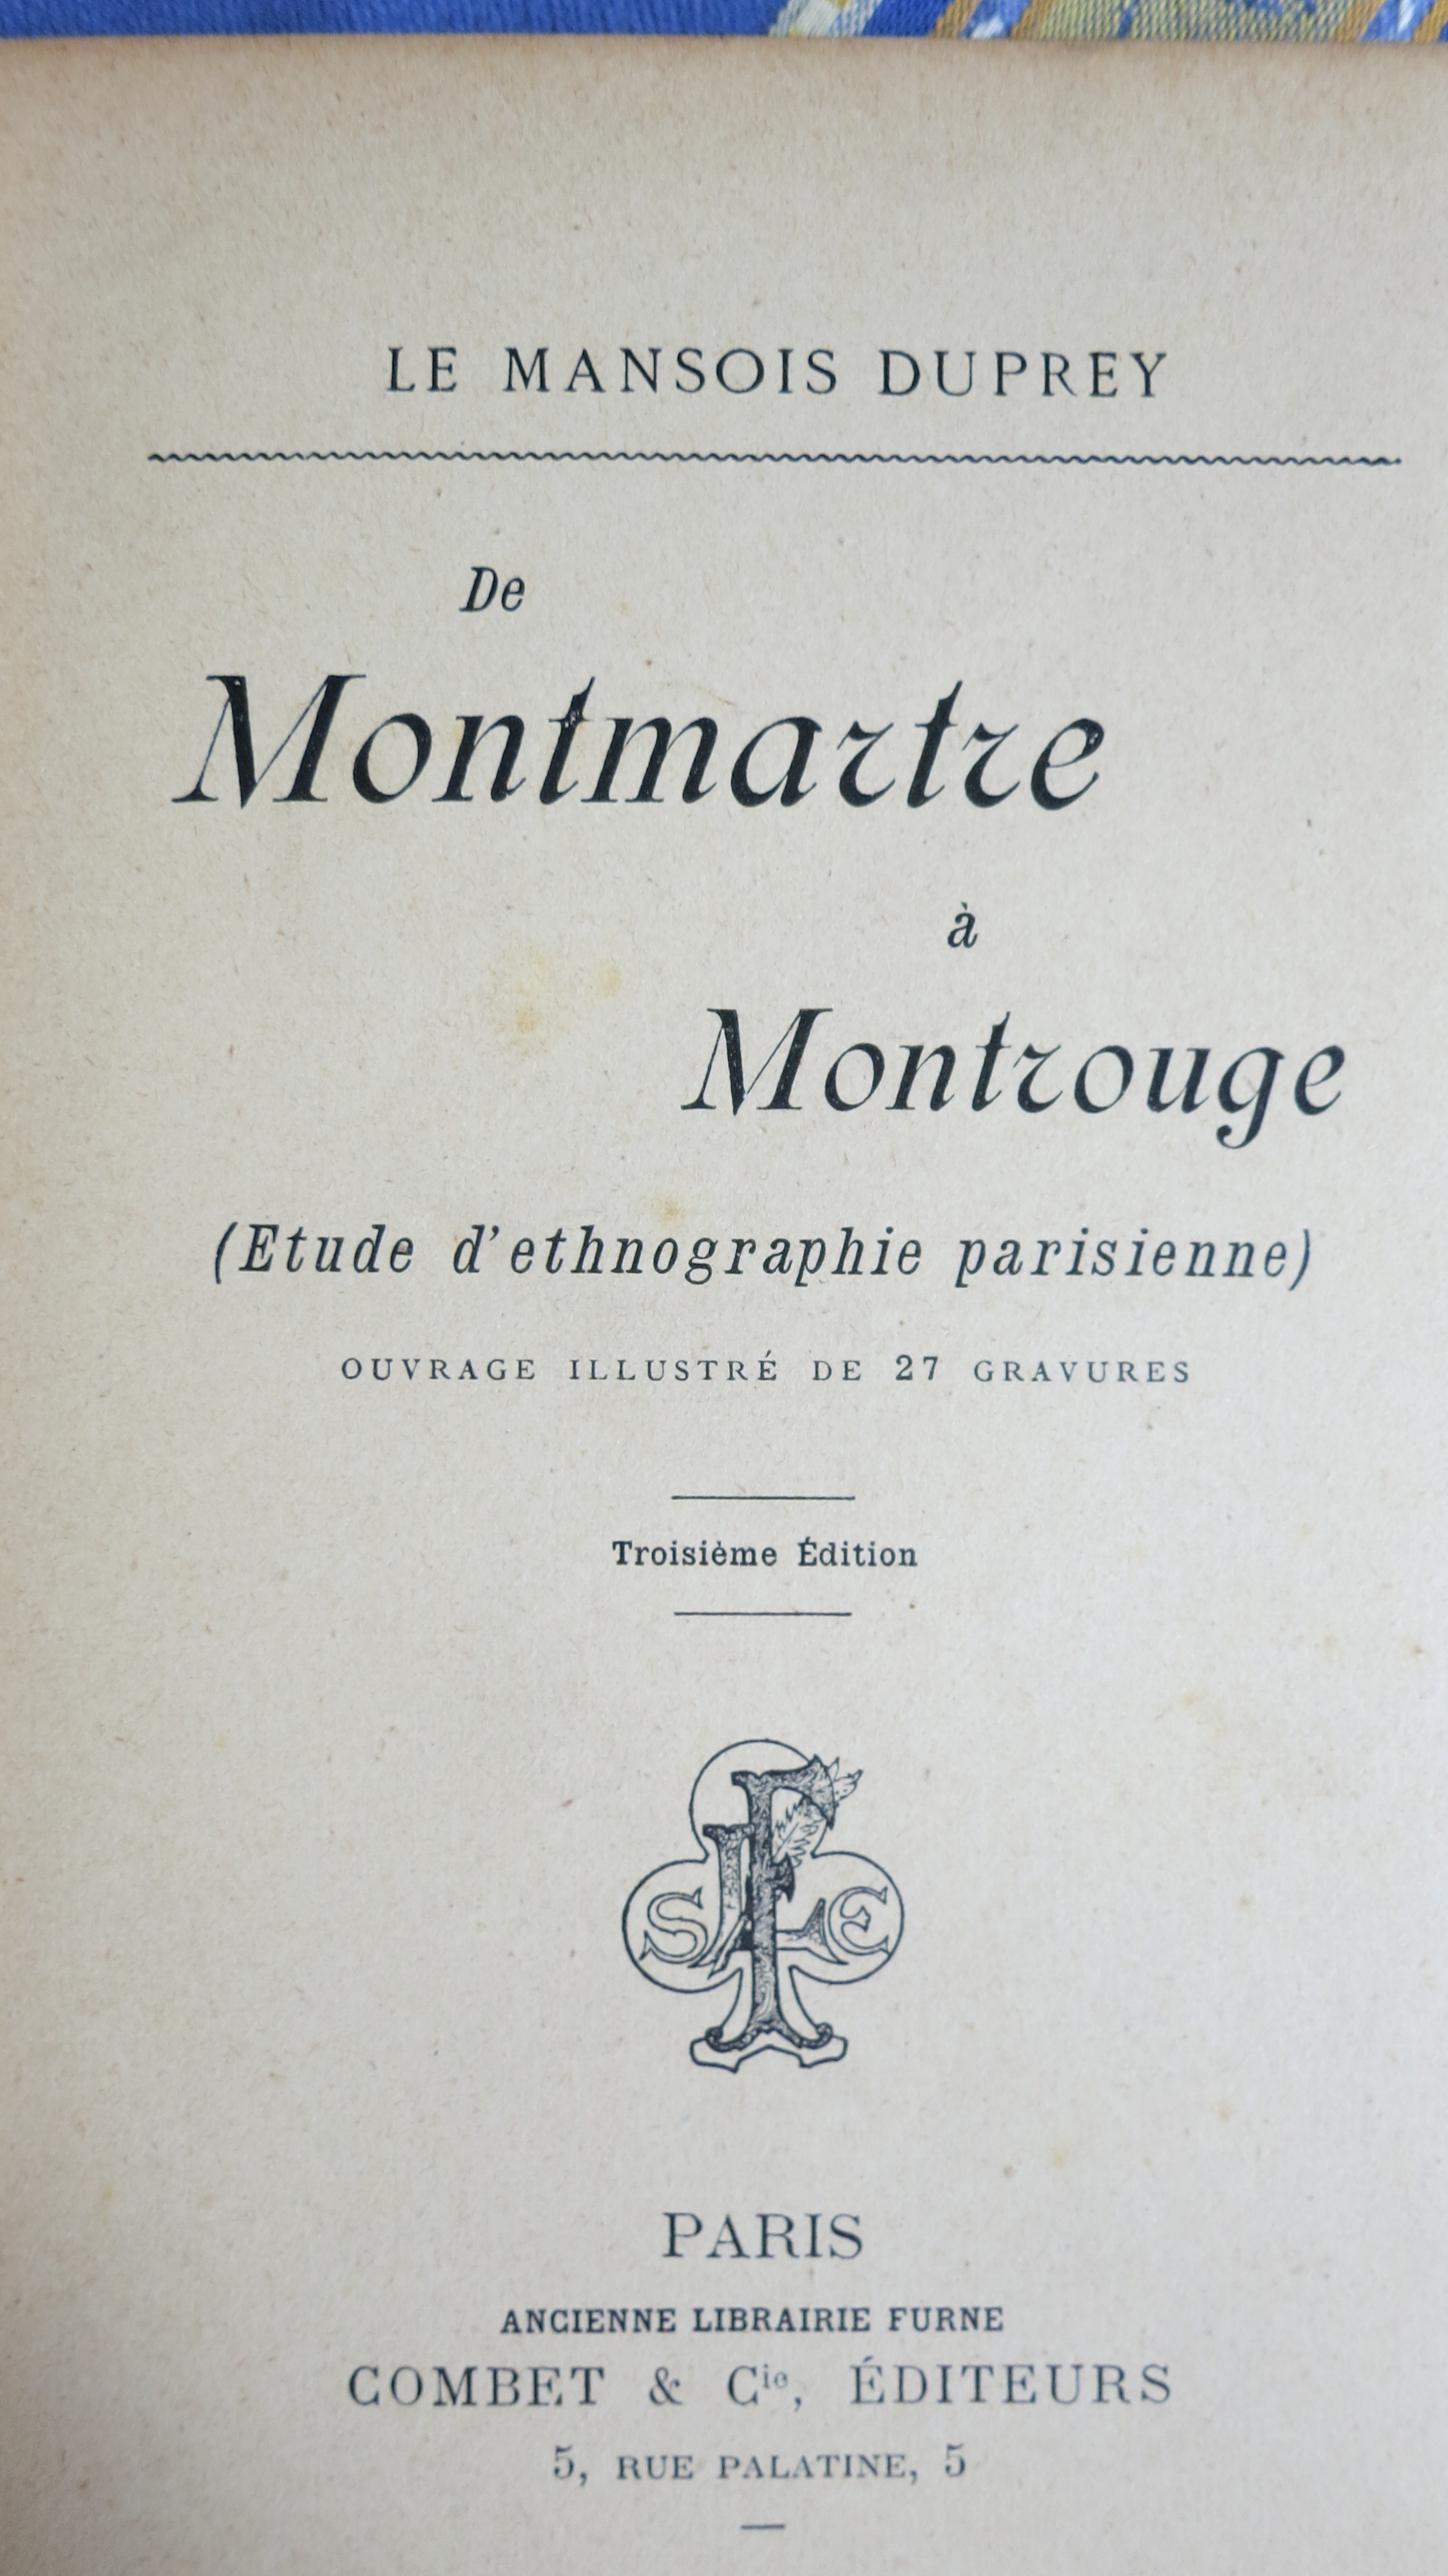 De Montmartre à Montrouge